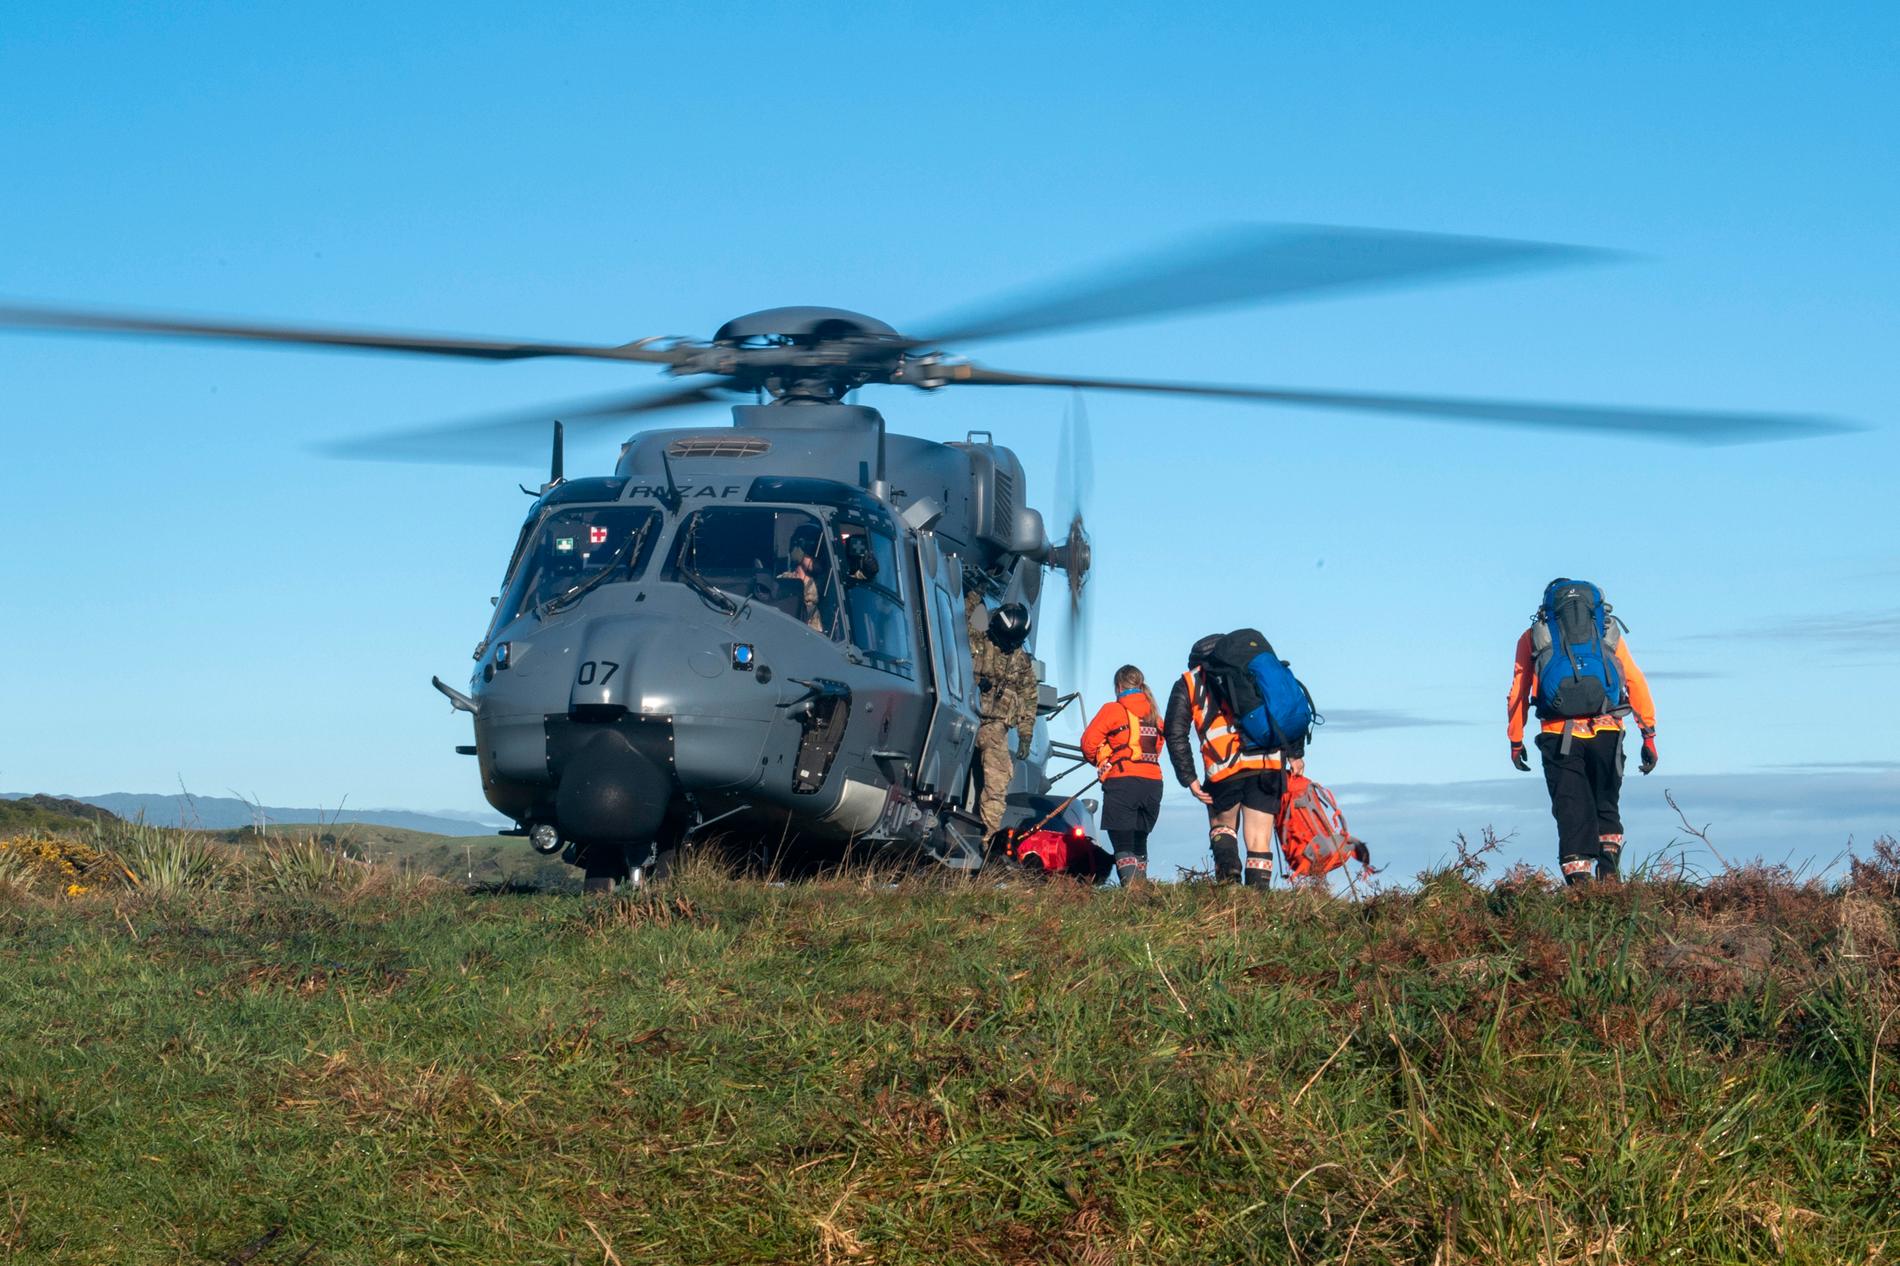 Räddningsarbetare går ombord en helikopter som användes i sökarbetet efter de två försvunna vandrarna.